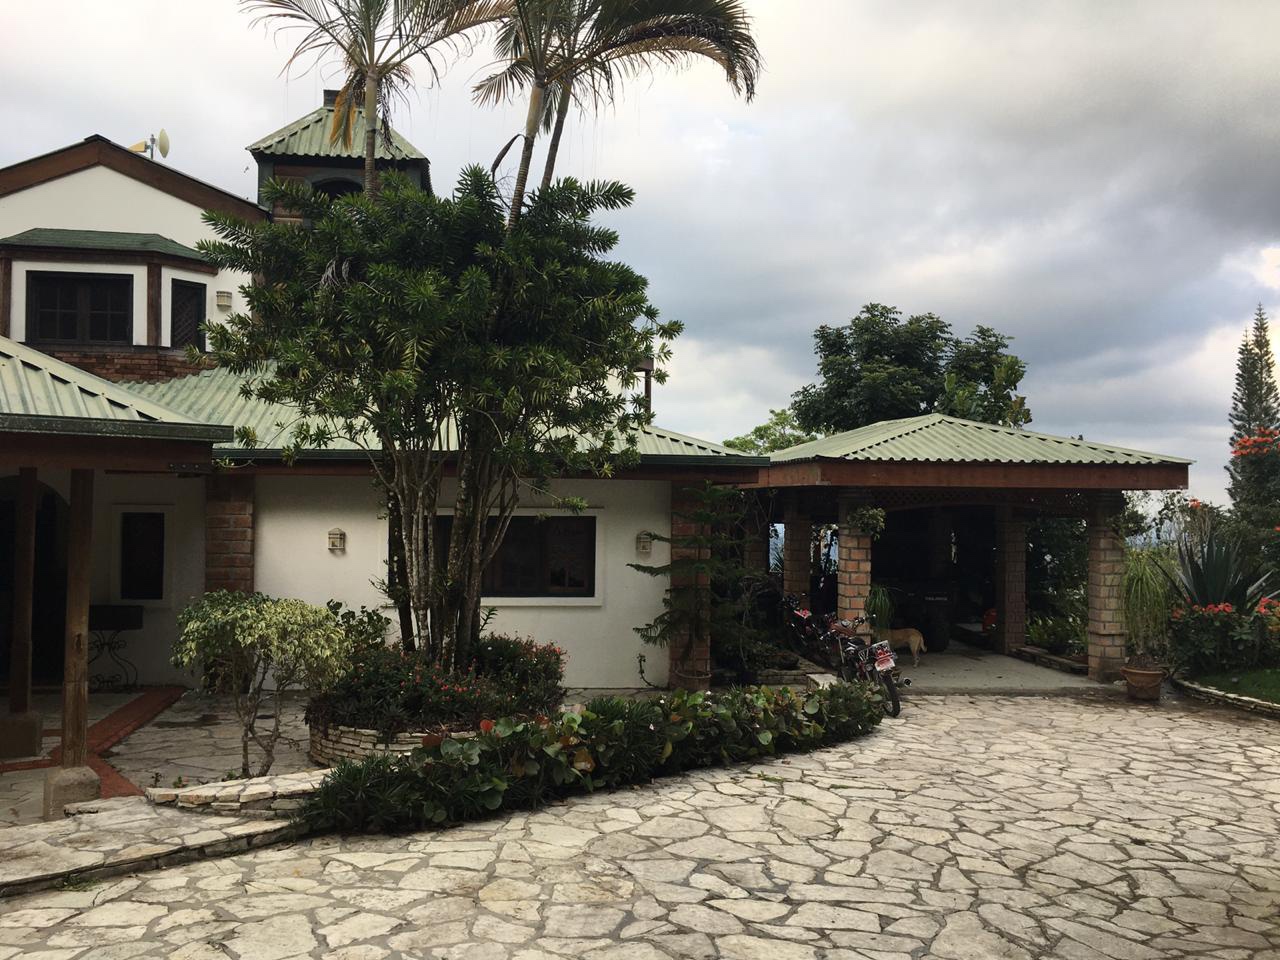 casas vacacionales y villas - Vendo casa de veraneo en la montaña de La colonia cambista  0